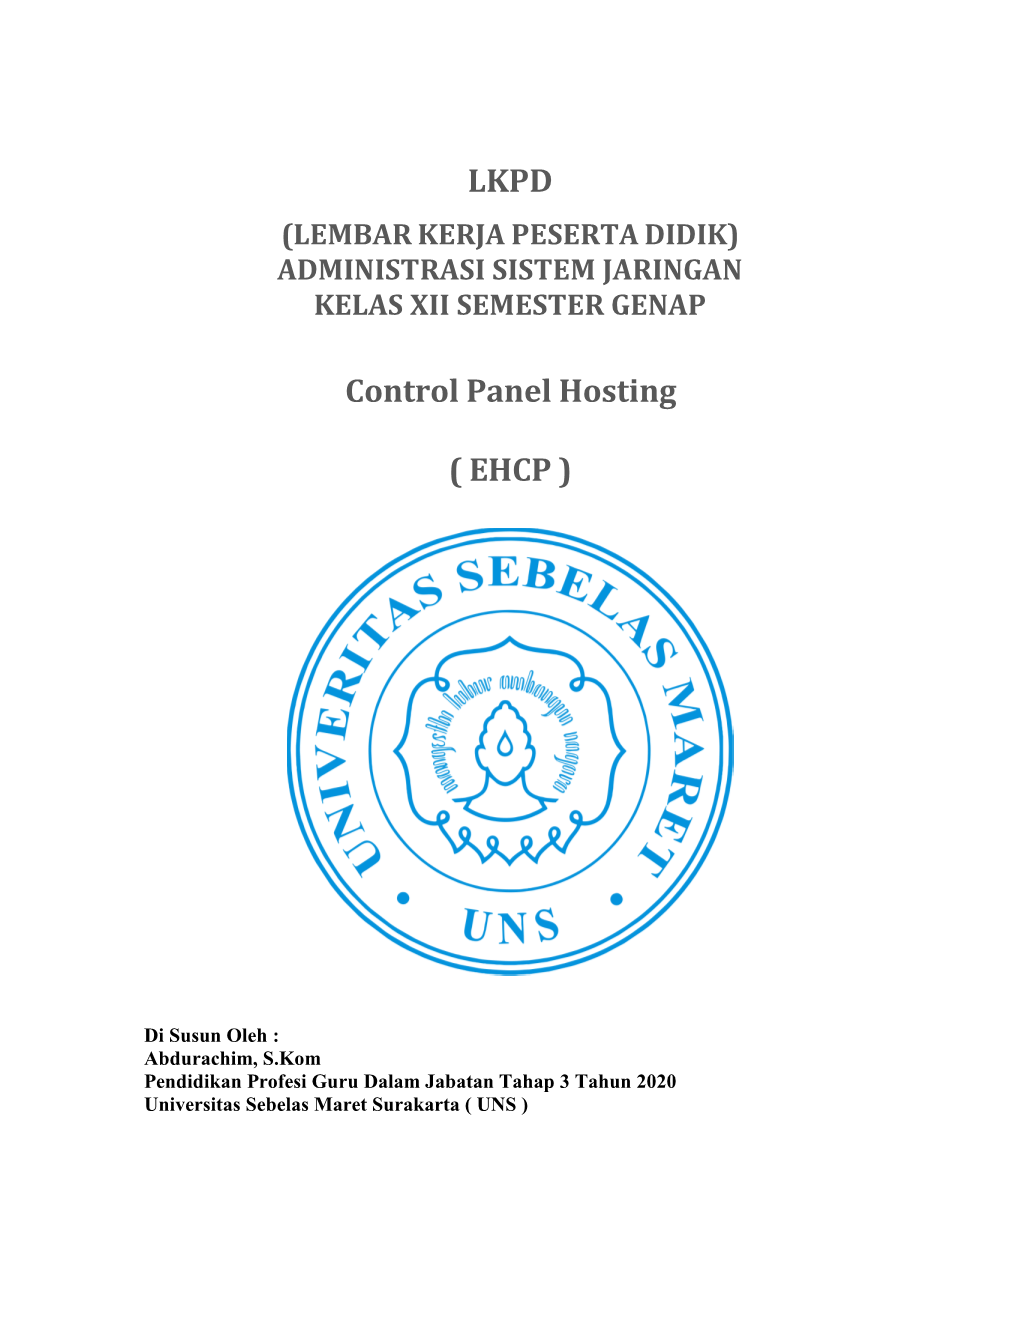 LKPD Control Panel Hosting ( EHCP )